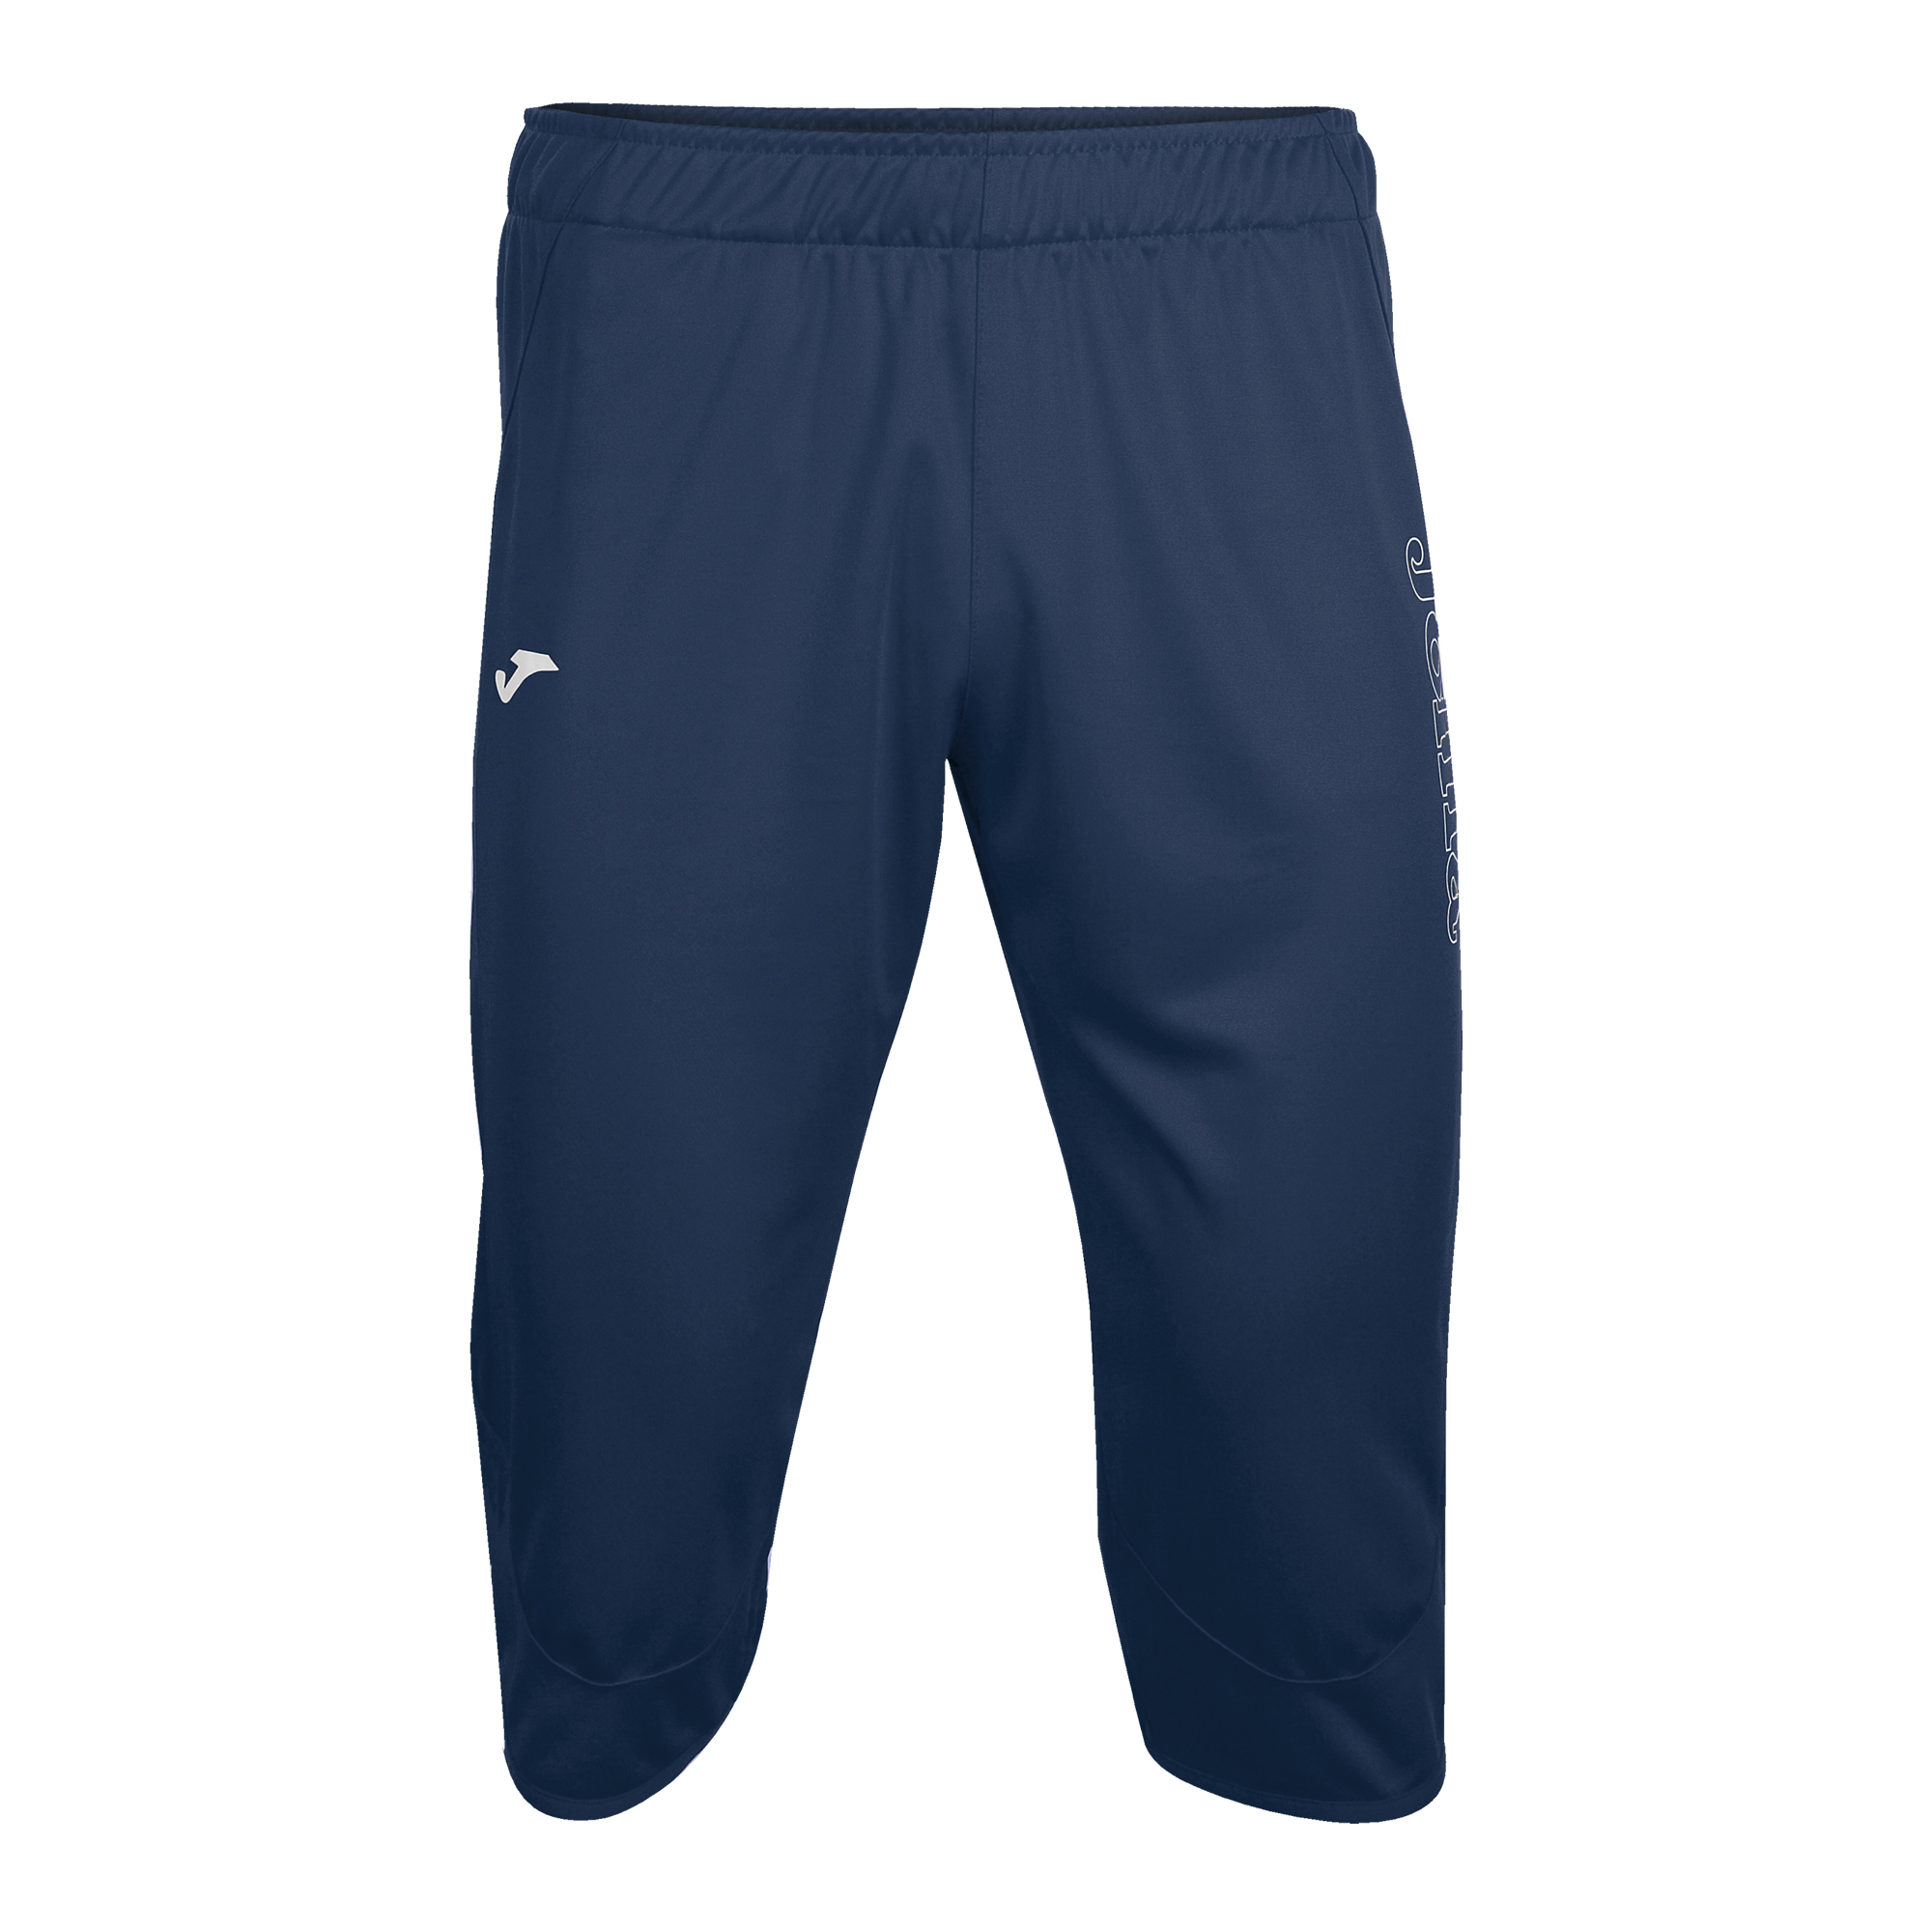 Pantalones deportivos azul marino